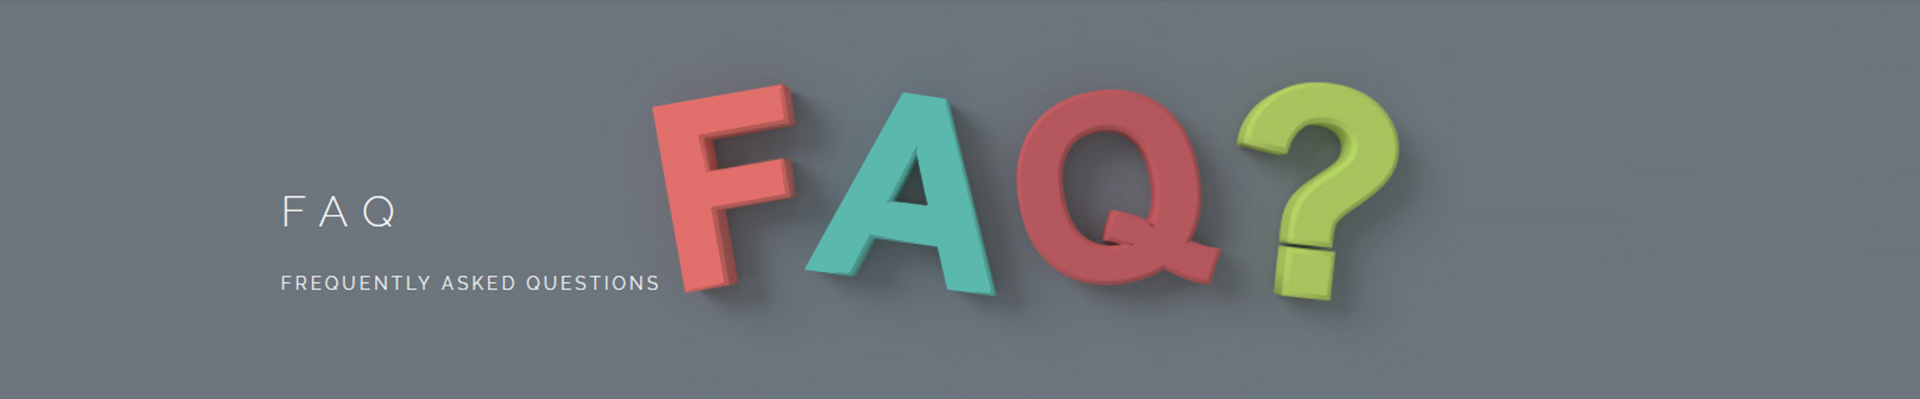 FAQ-баннер